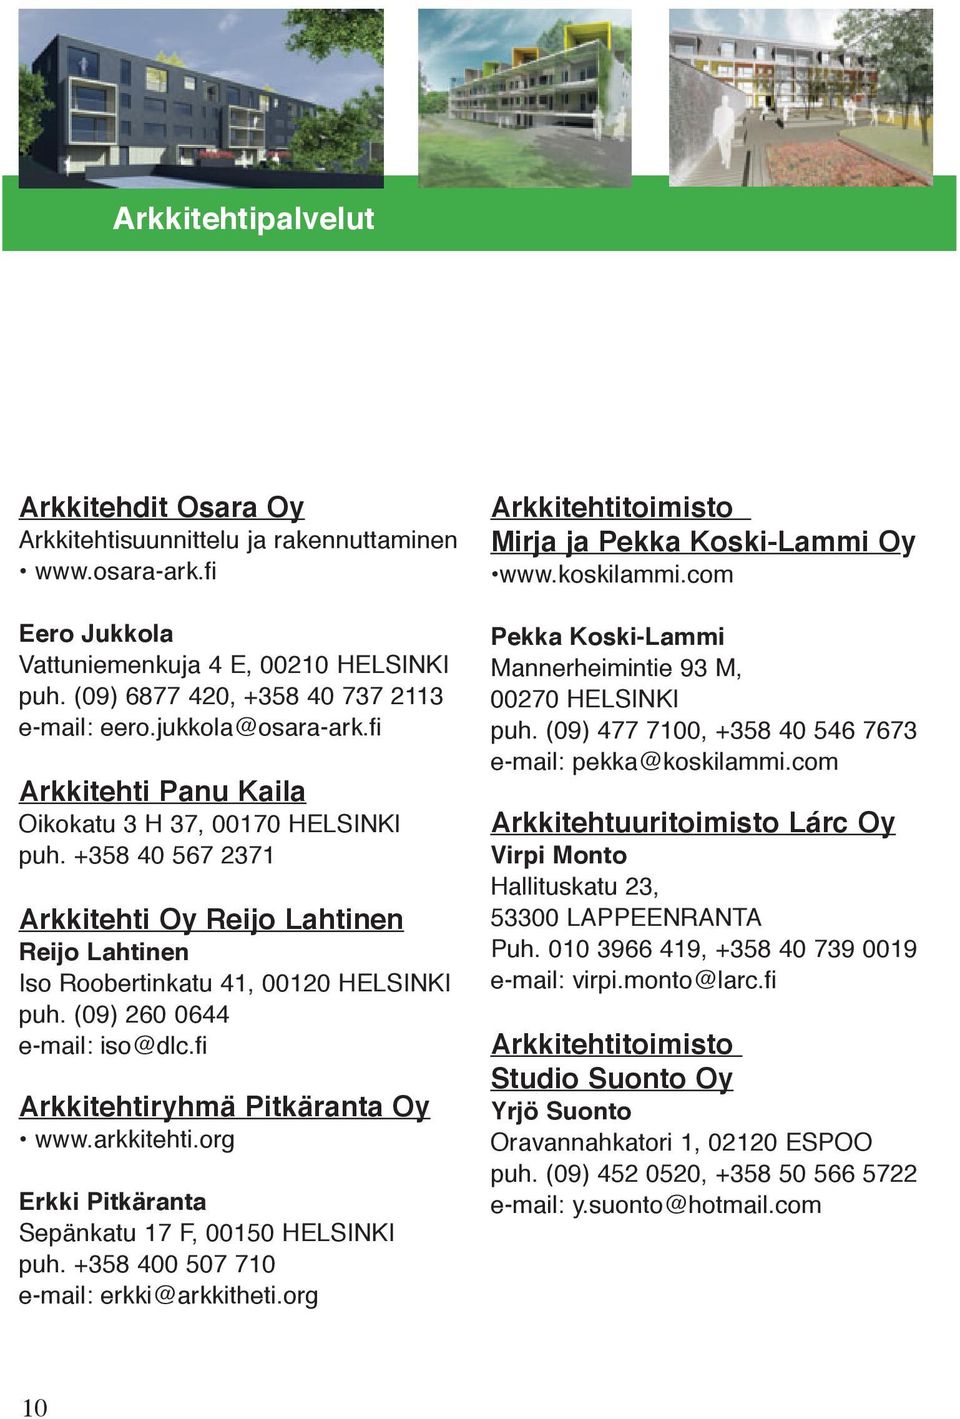 (09) 260 0644 e-mail: iso@dlc.fi Arkkitehtiryhmä Pitkäranta Oy www.arkkitehti.org Erkki Pitkäranta Sepänkatu 17 F, 00150 HELSINKI puh. +358 400 507 710 e-mail: erkki@arkkitheti.